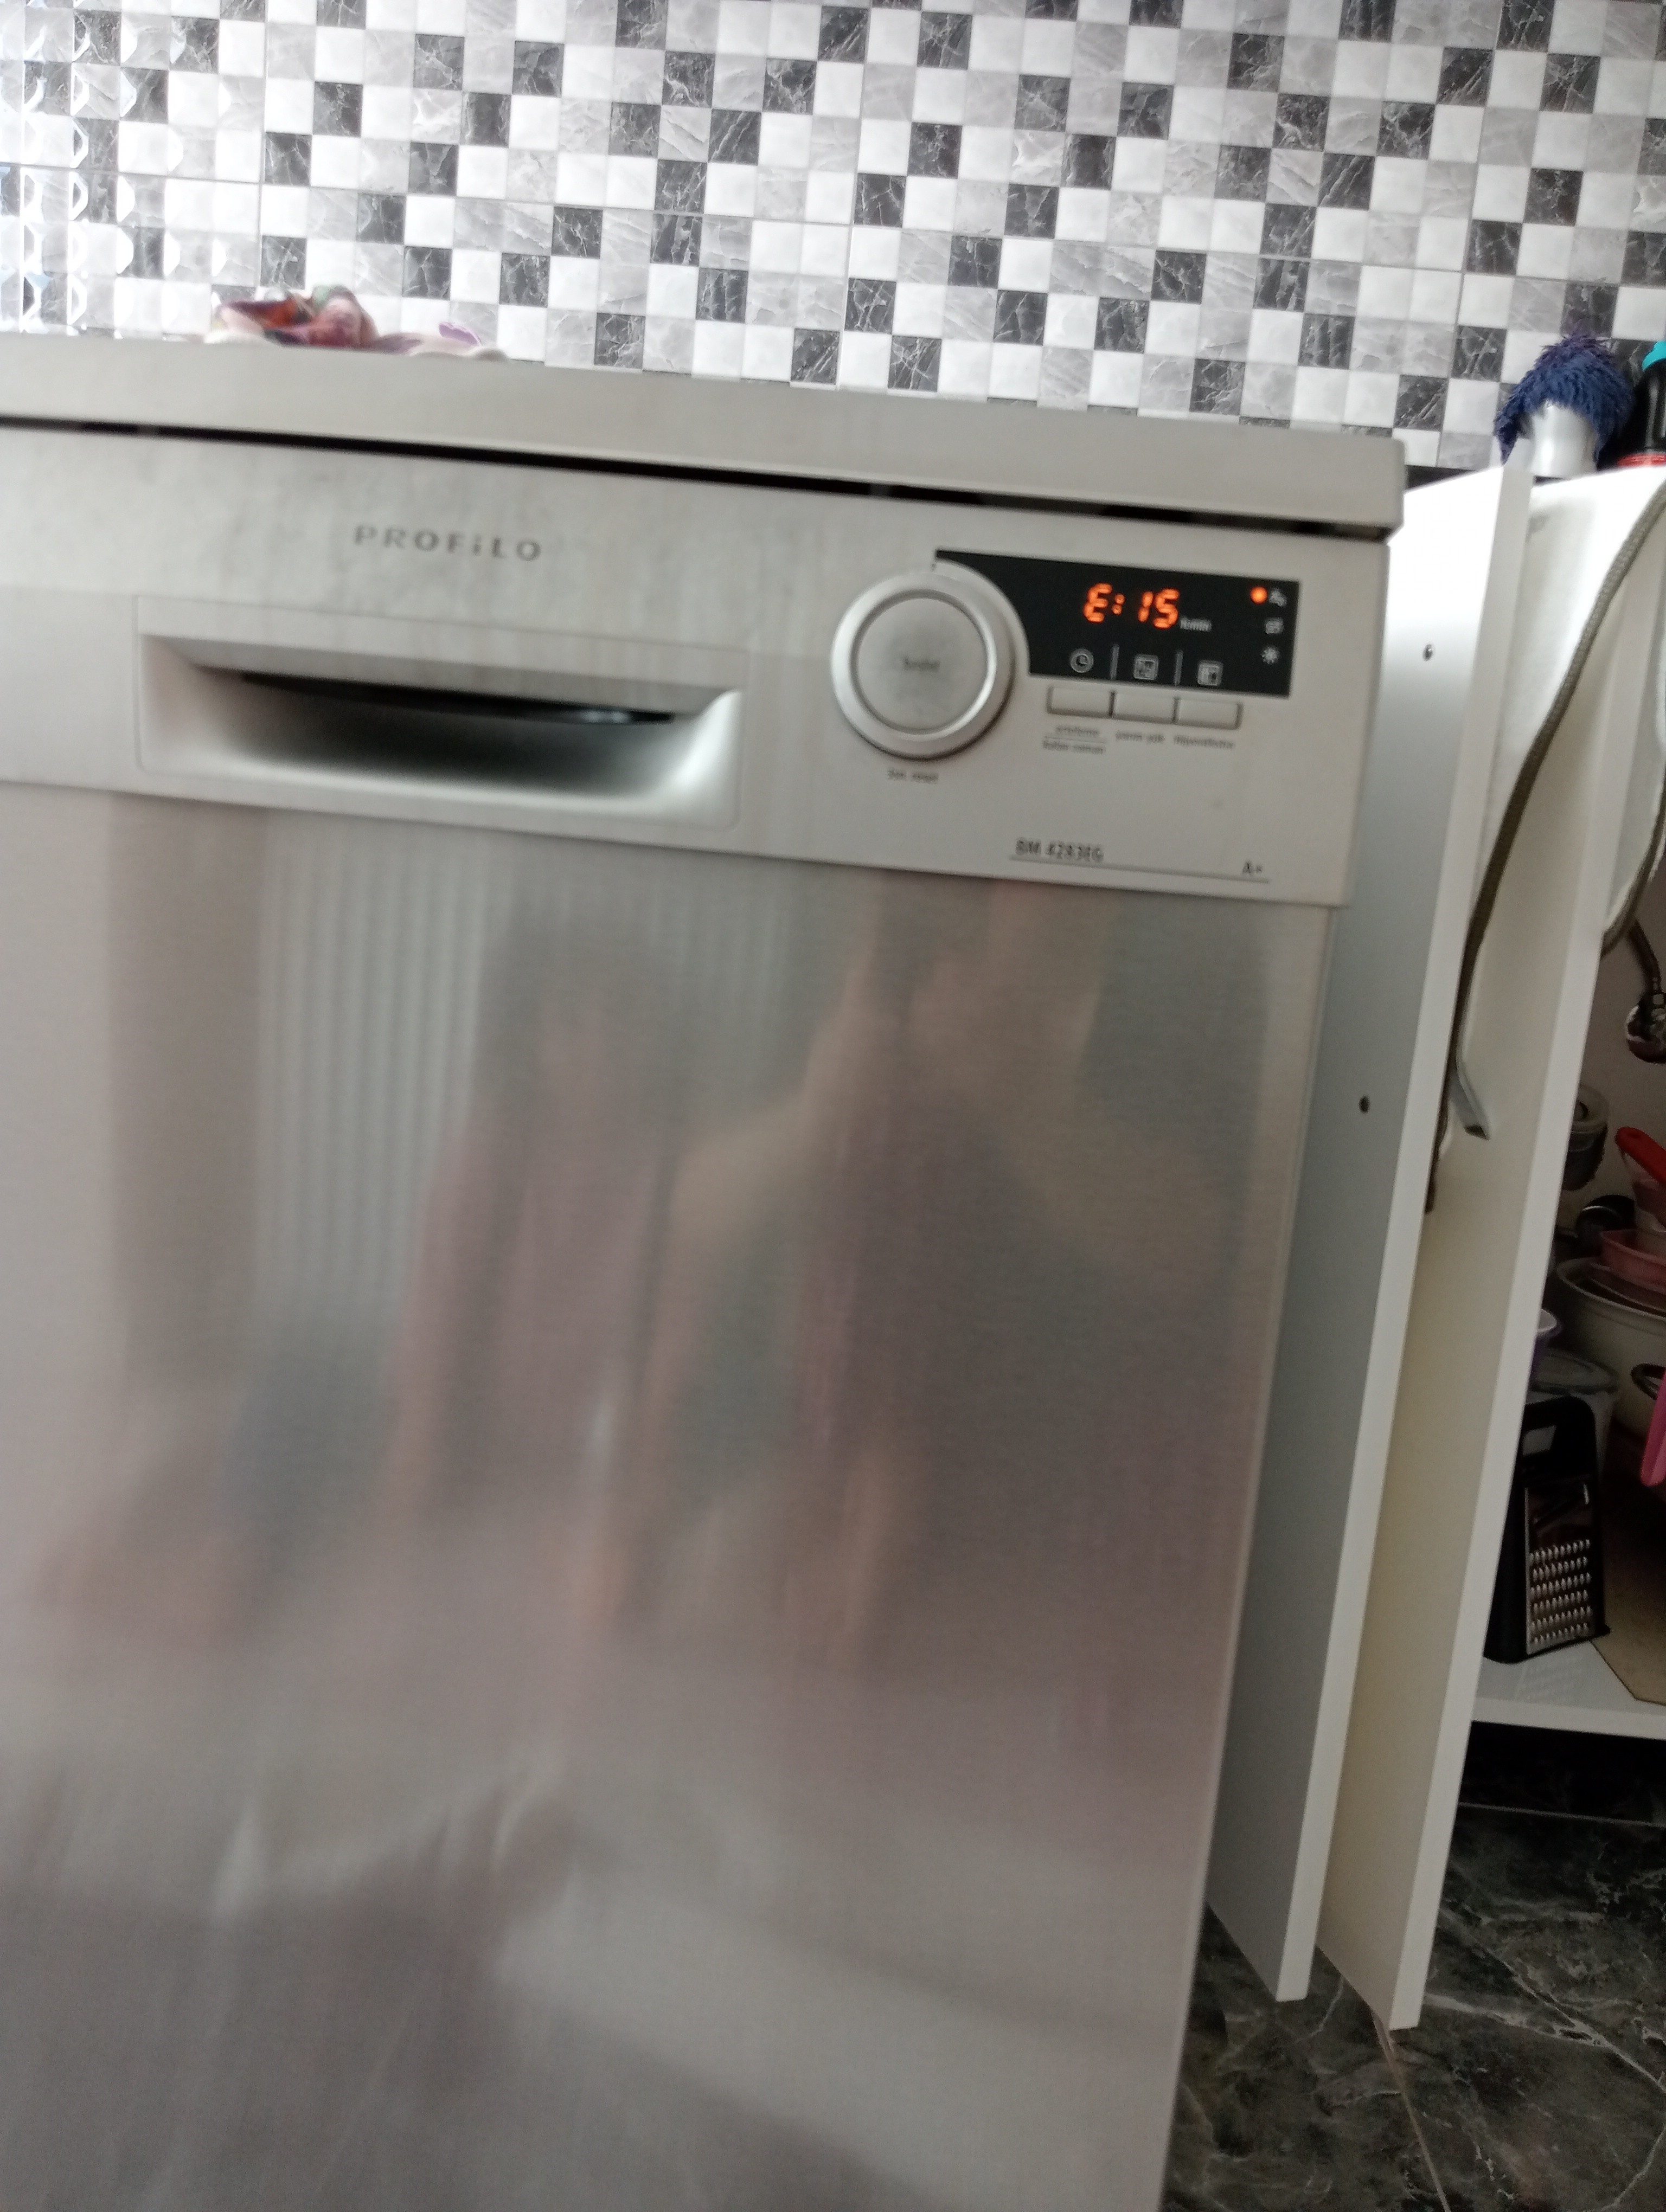 Merhaba benim bulaşık makinem 3:15 yazıp sönüyor bide çeşme yeri yanıp sönüyor her yerine ...